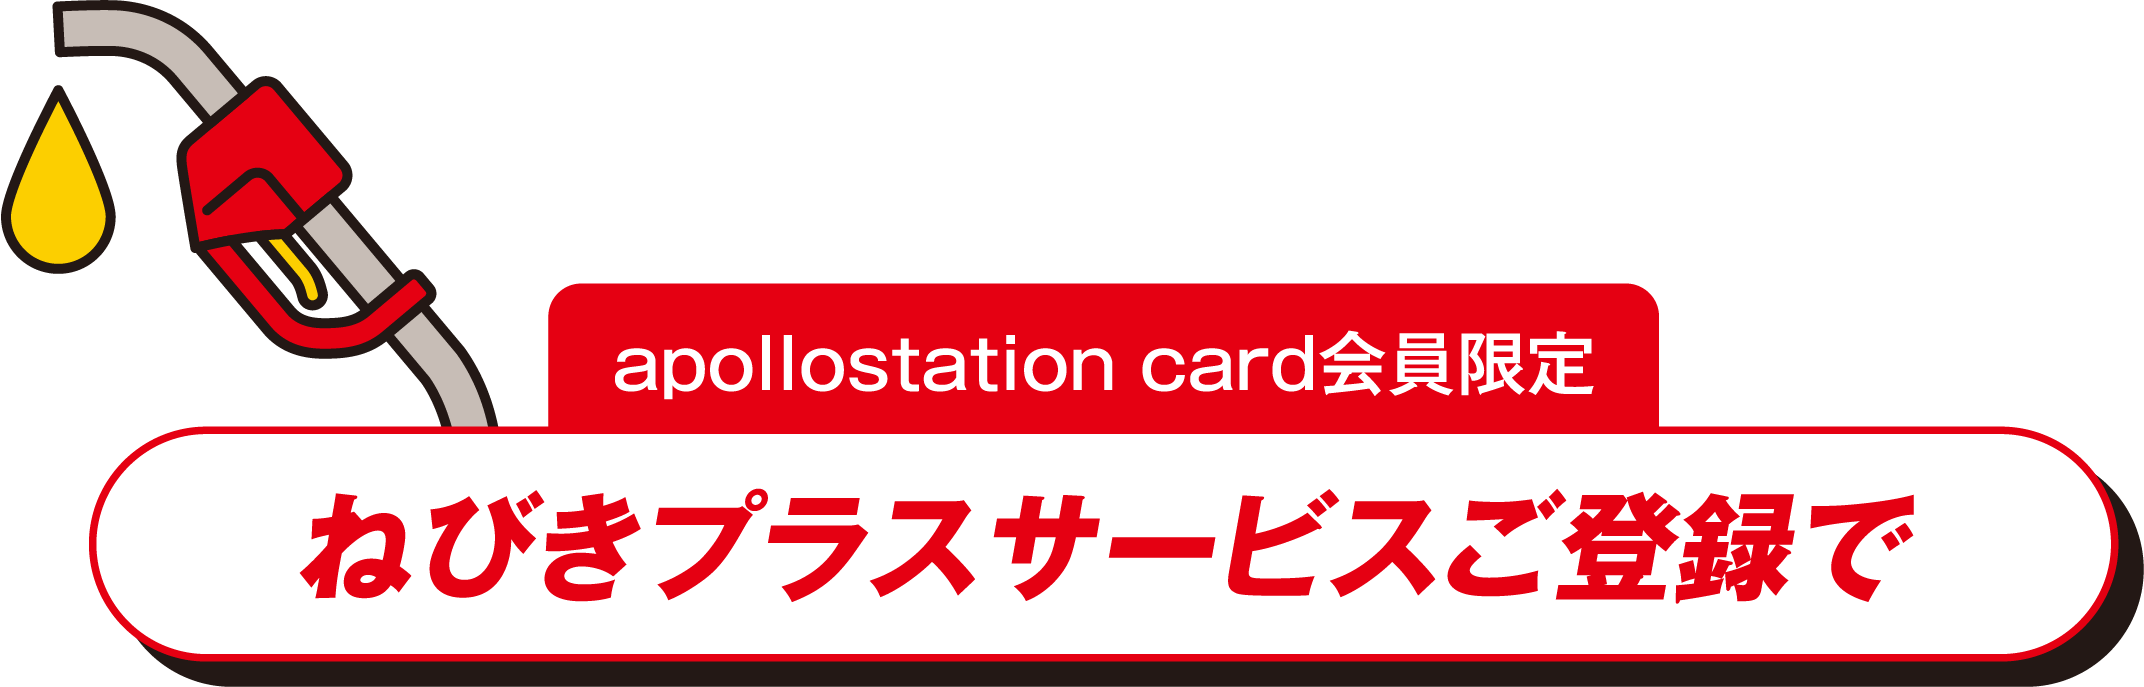 apollostation card会員限定 ねびきプラスサービスご登録で